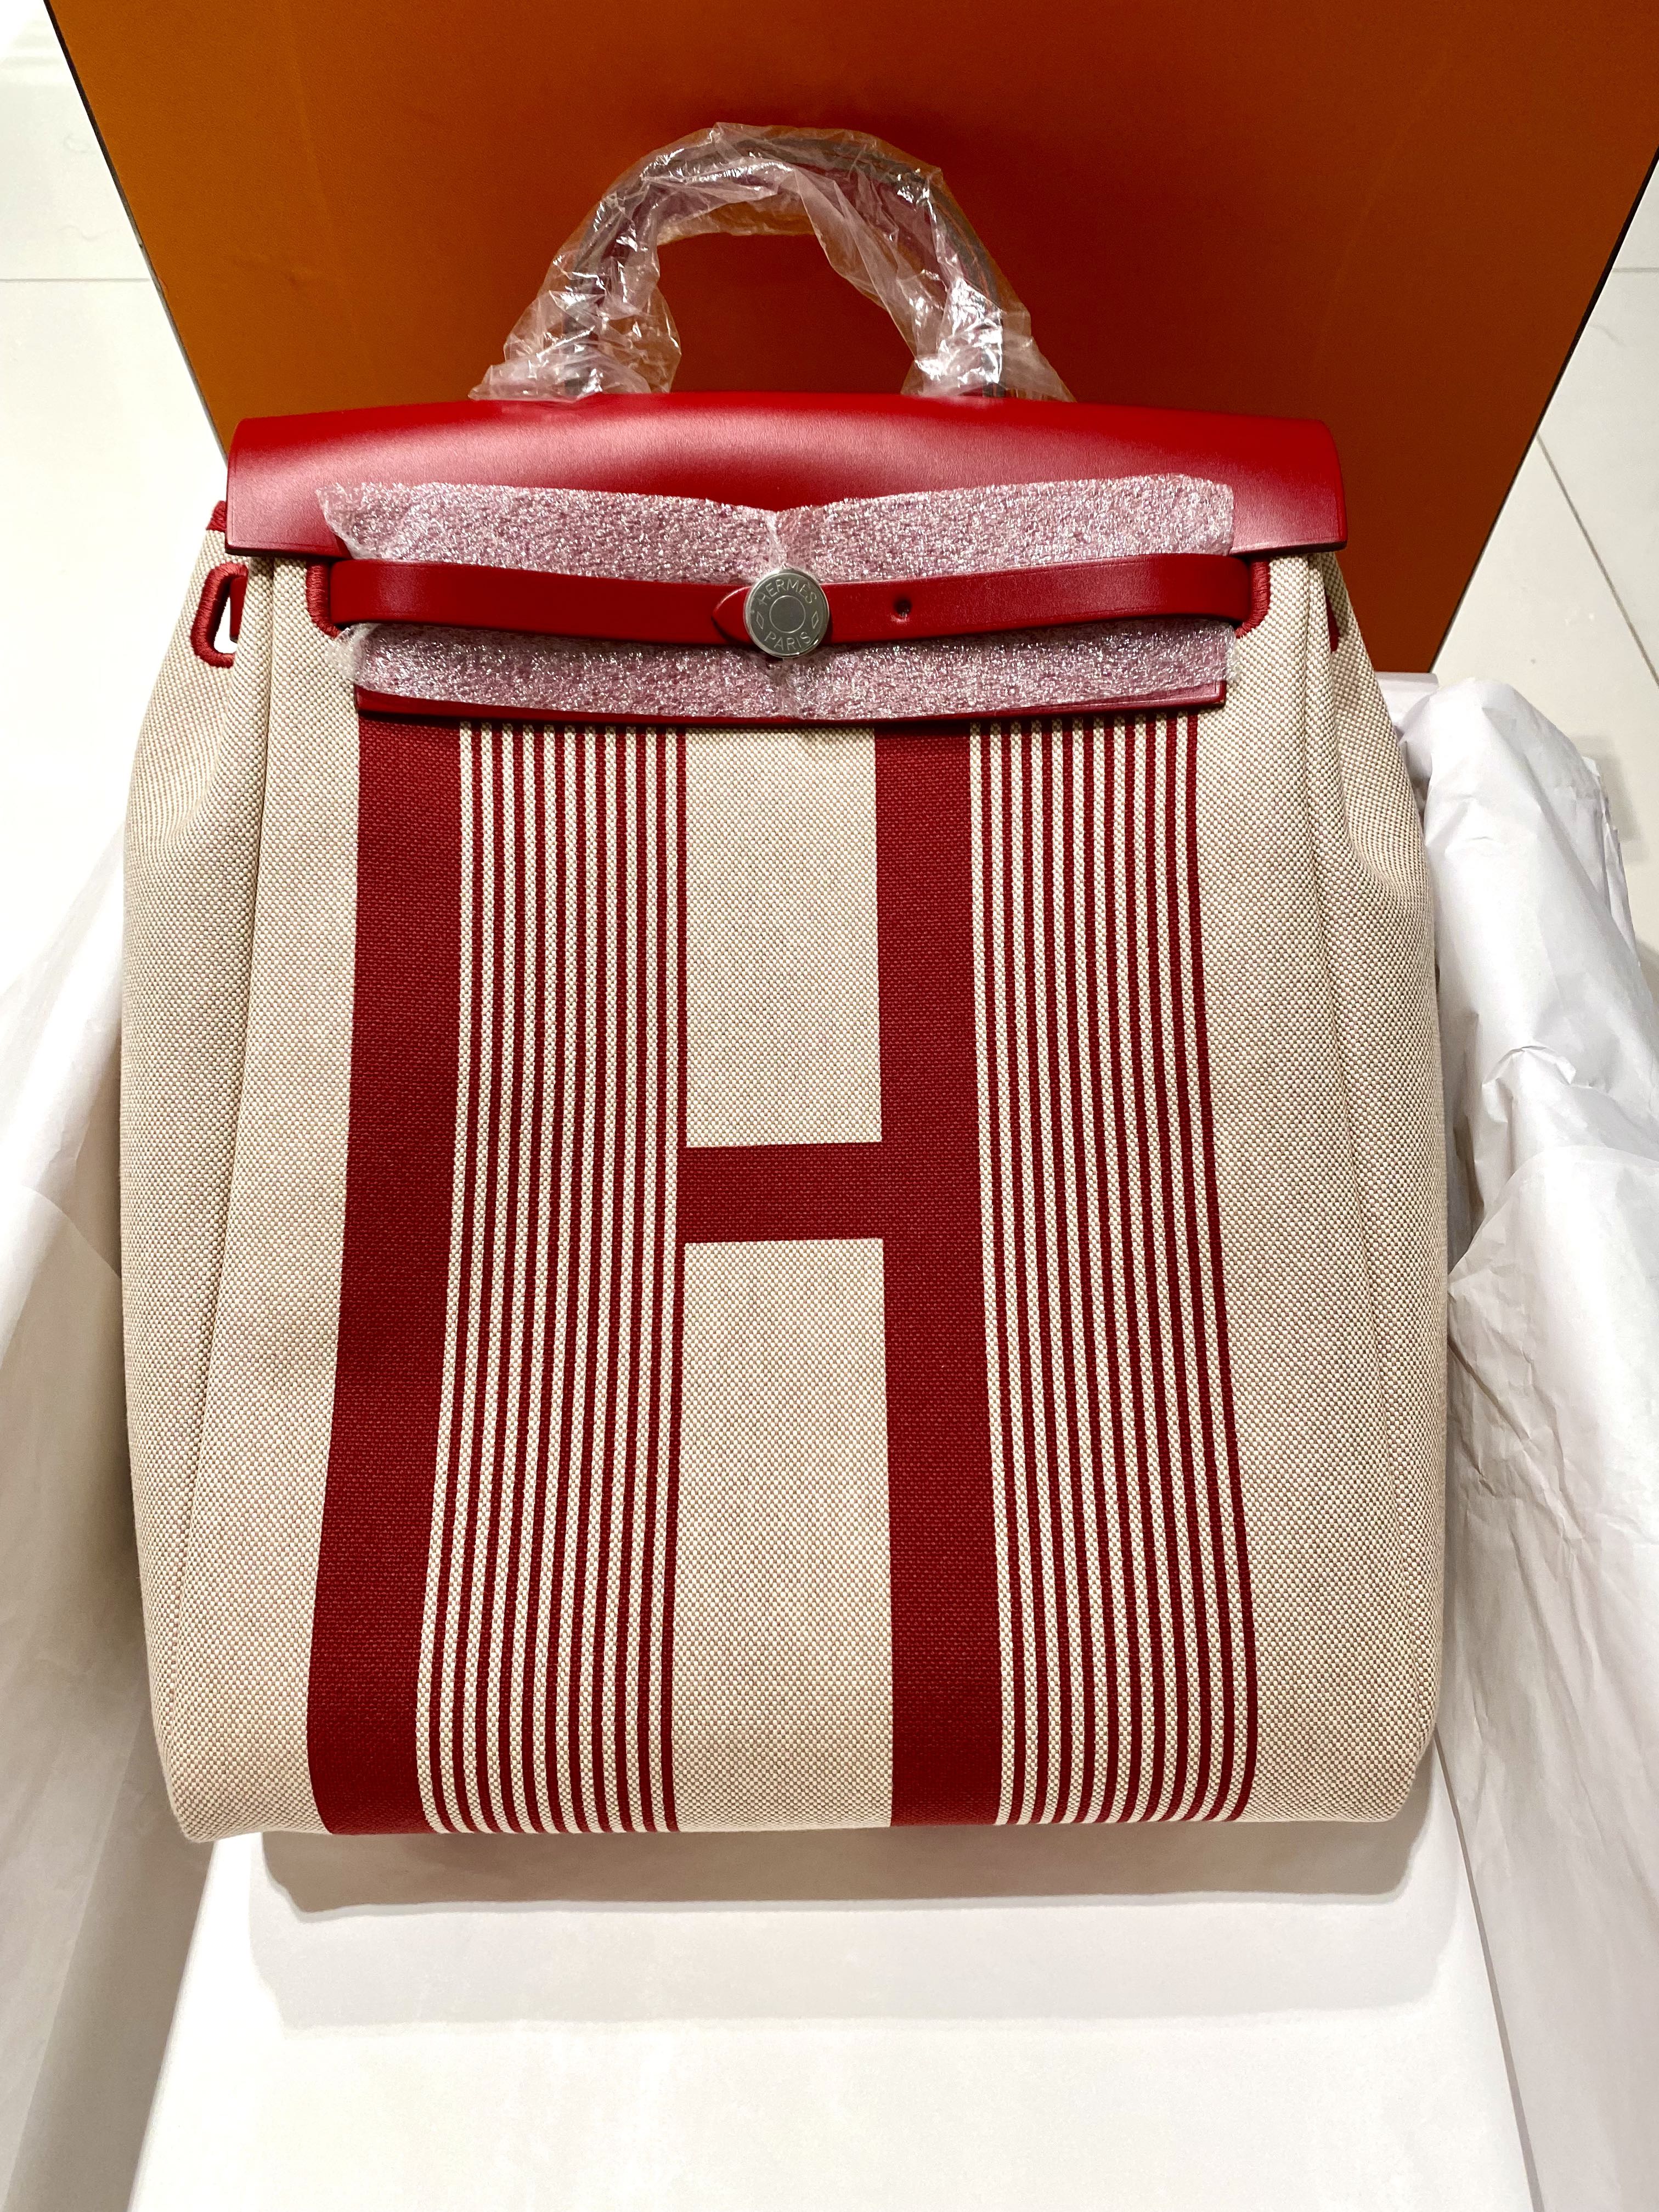 Hermes Black Herbag A Dos Zip Retourne Backpack – I MISS YOU VINTAGE